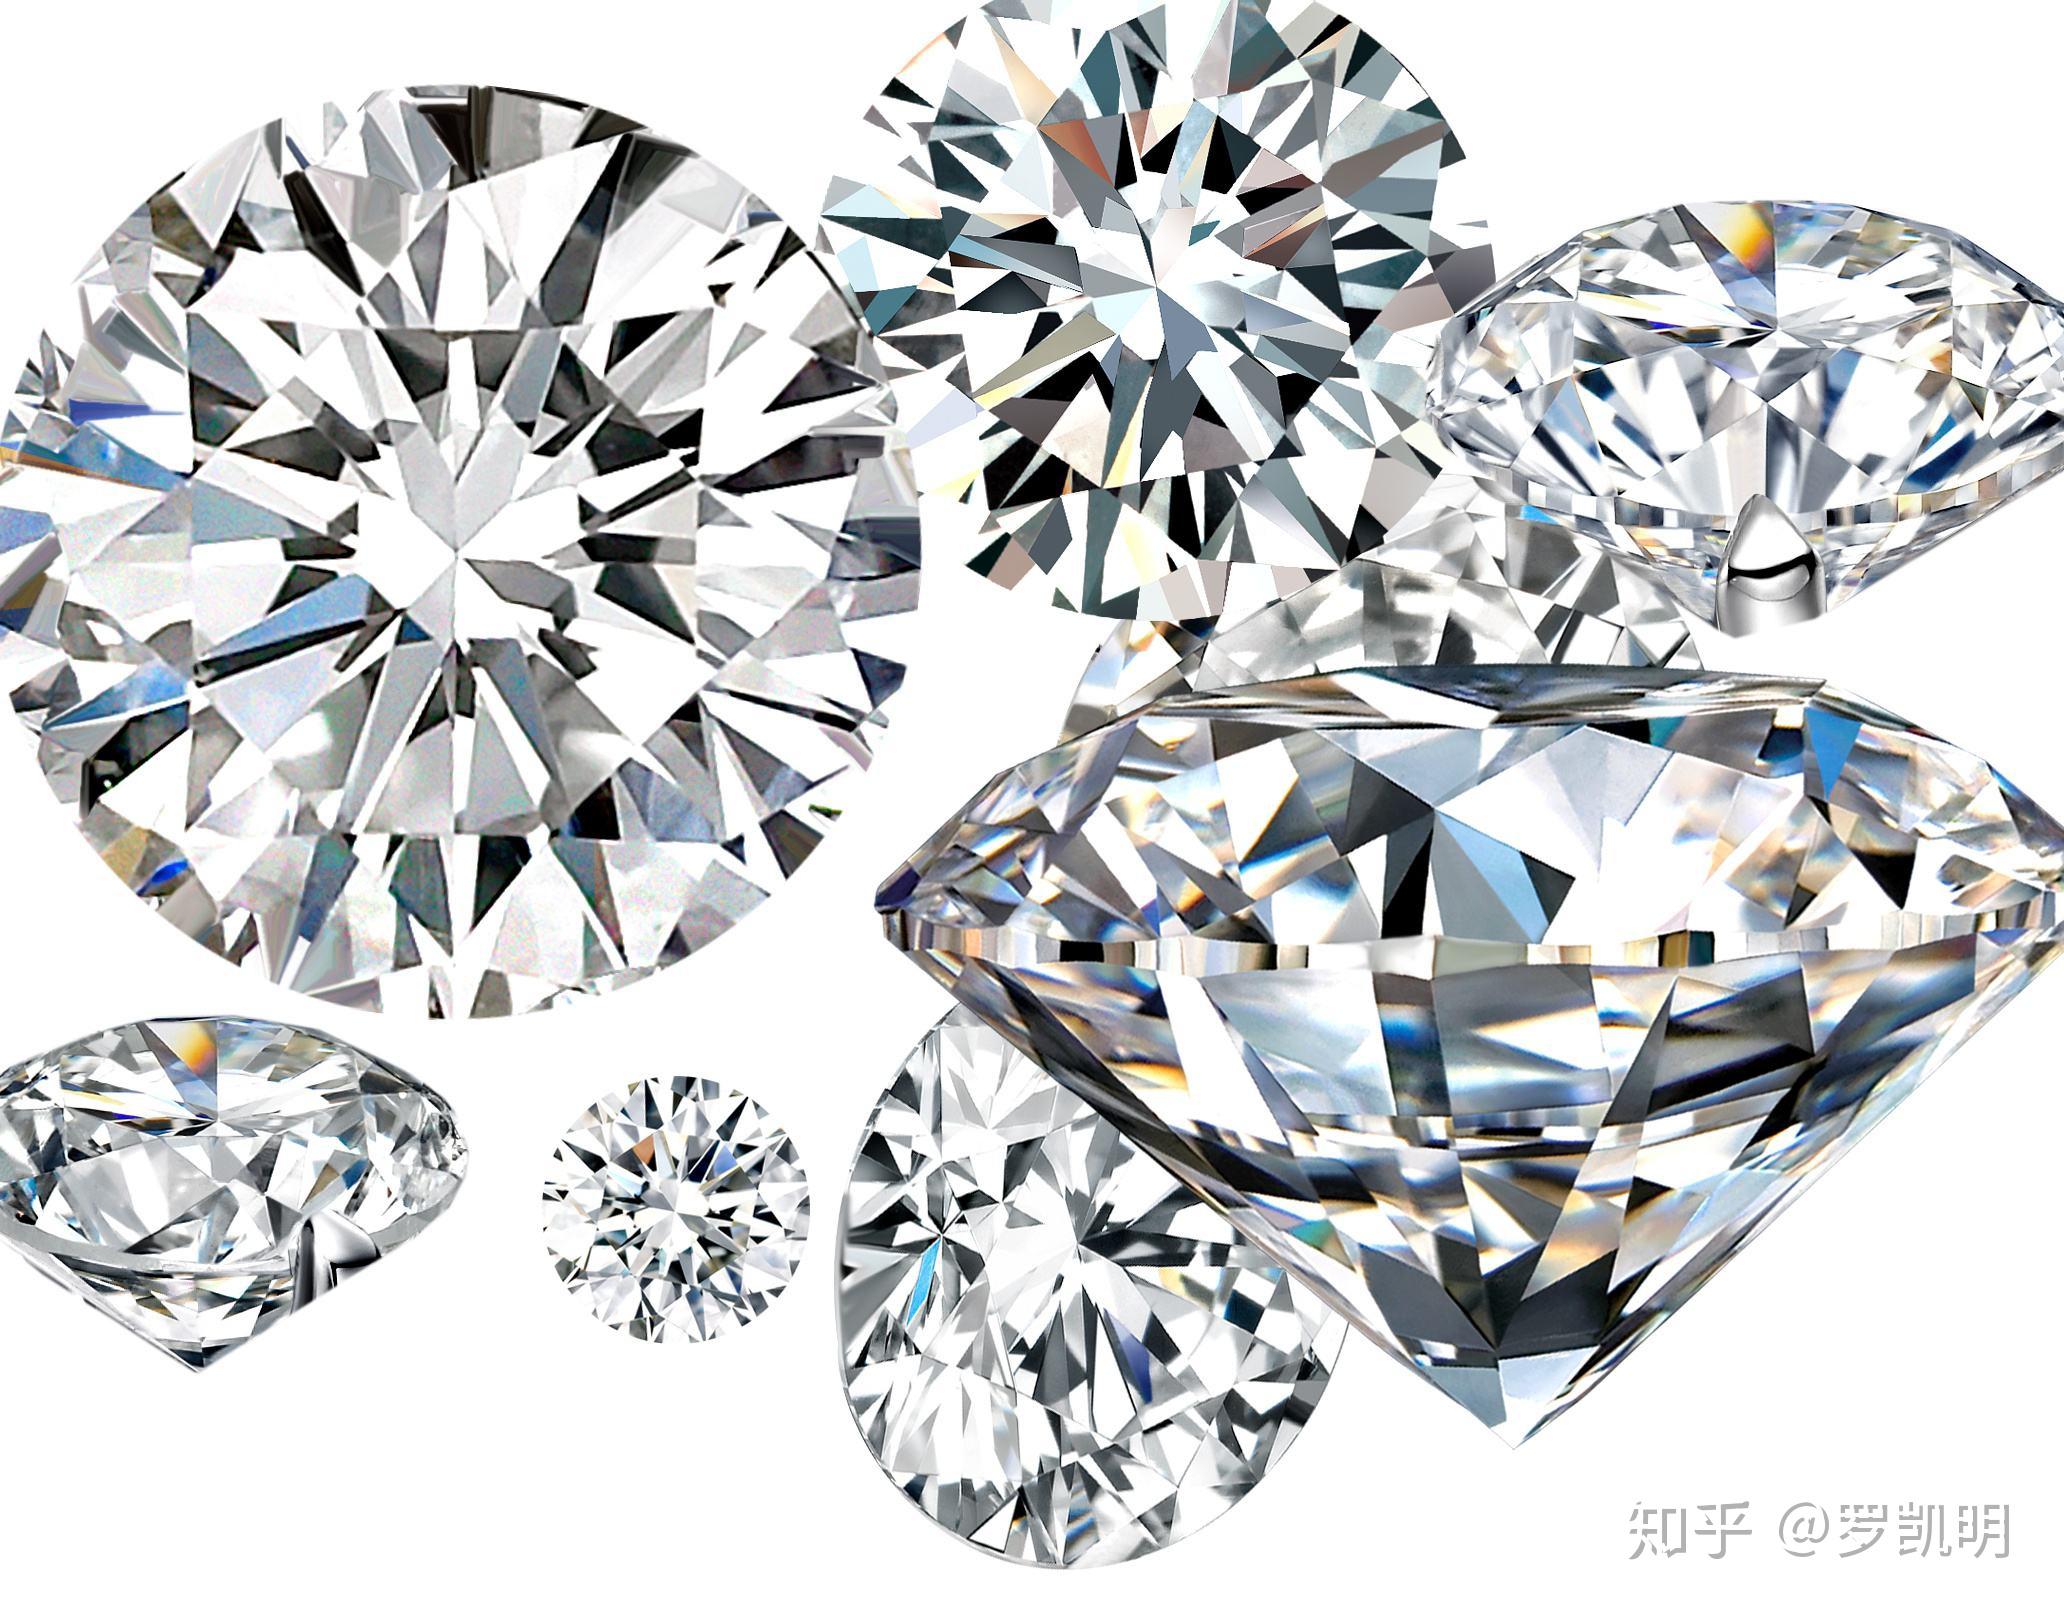 工艺合集|一分钟读懂6种常见的钻戒镶嵌工艺 – 我爱钻石网官网